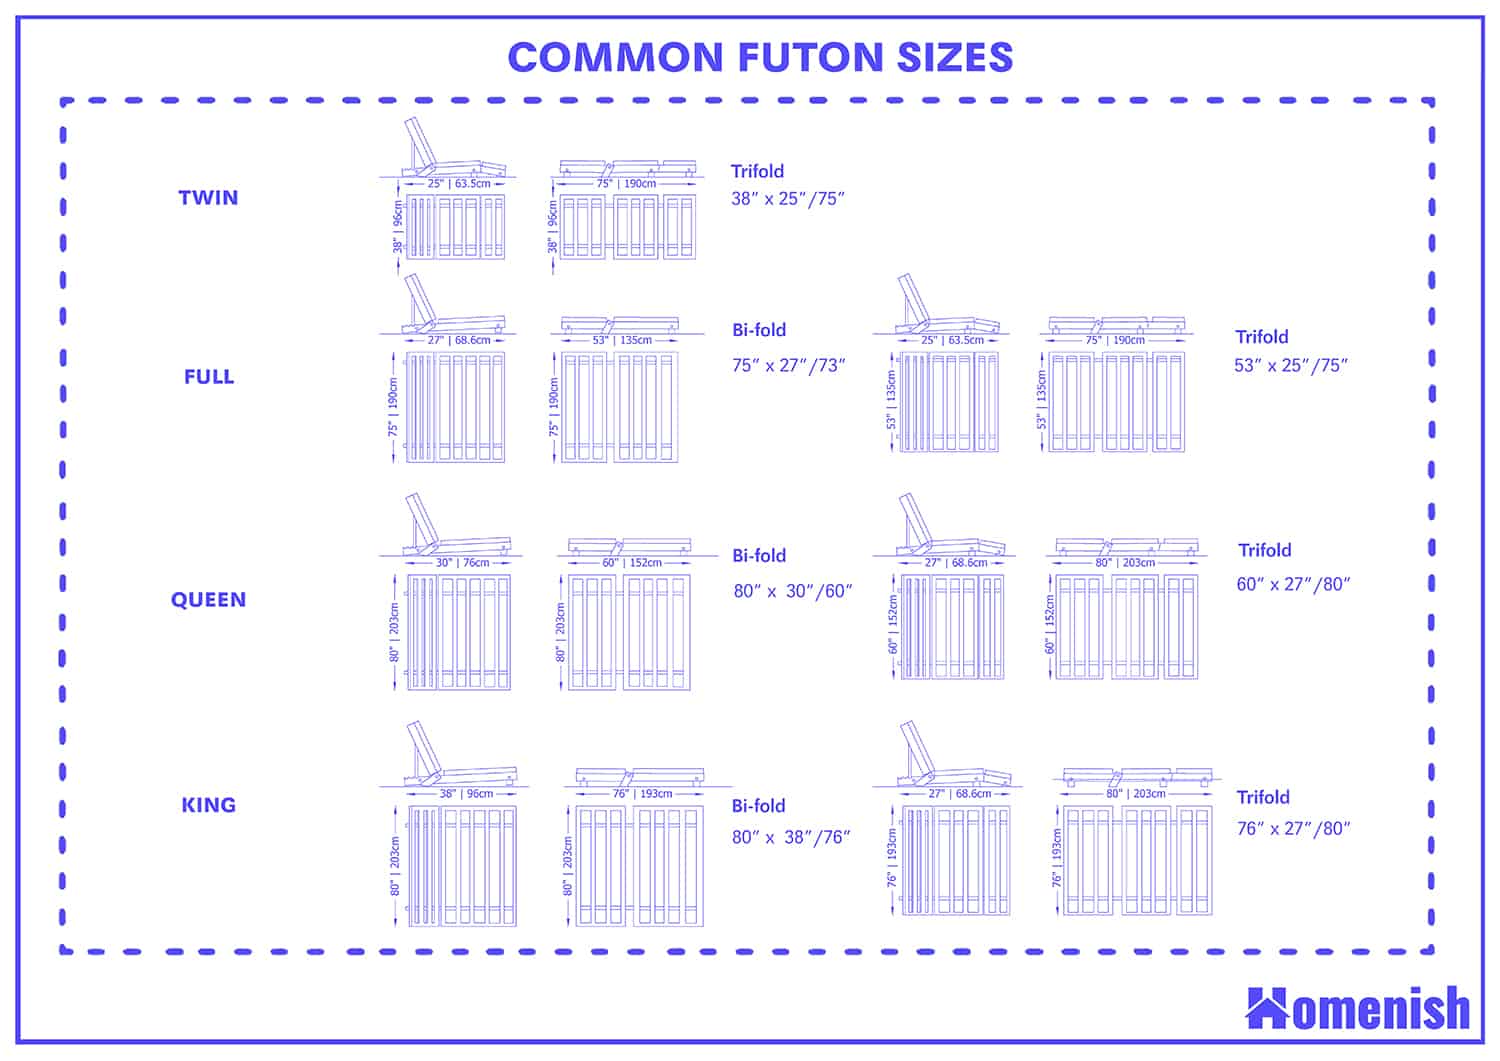 Common Futon Sizes